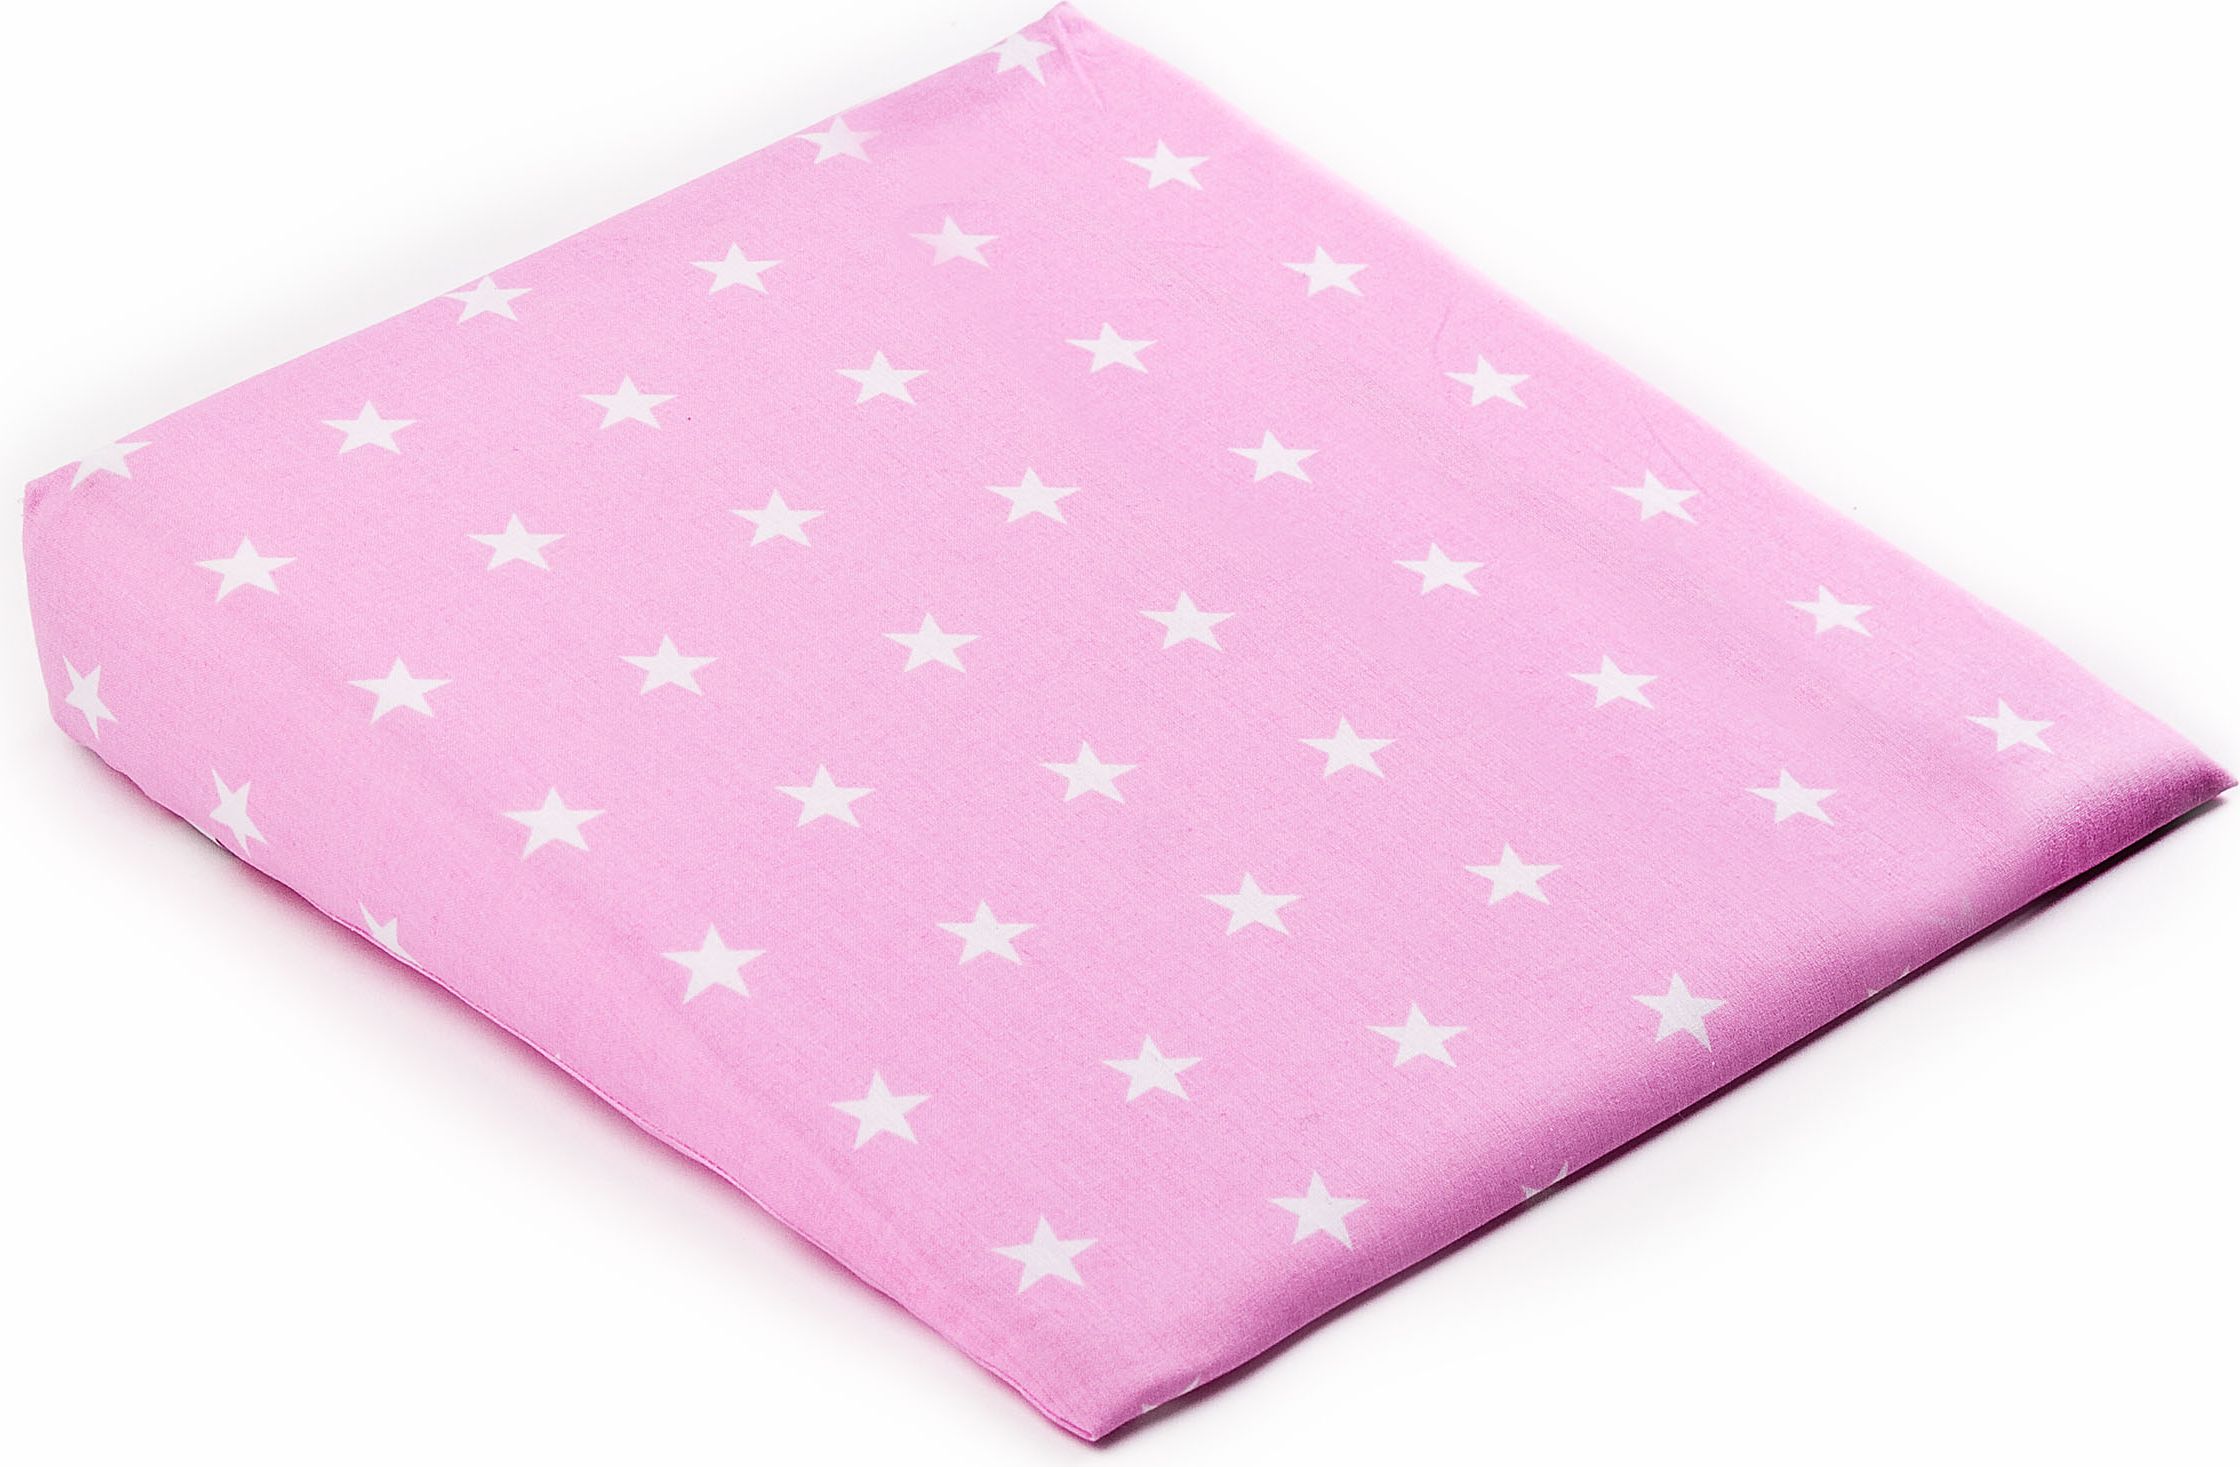 Potah na kojenecký polštář - klín SENSILLO, 38x30cm, motiv hvězdičky, barva růžová (bez polštáře) - obrázek 1